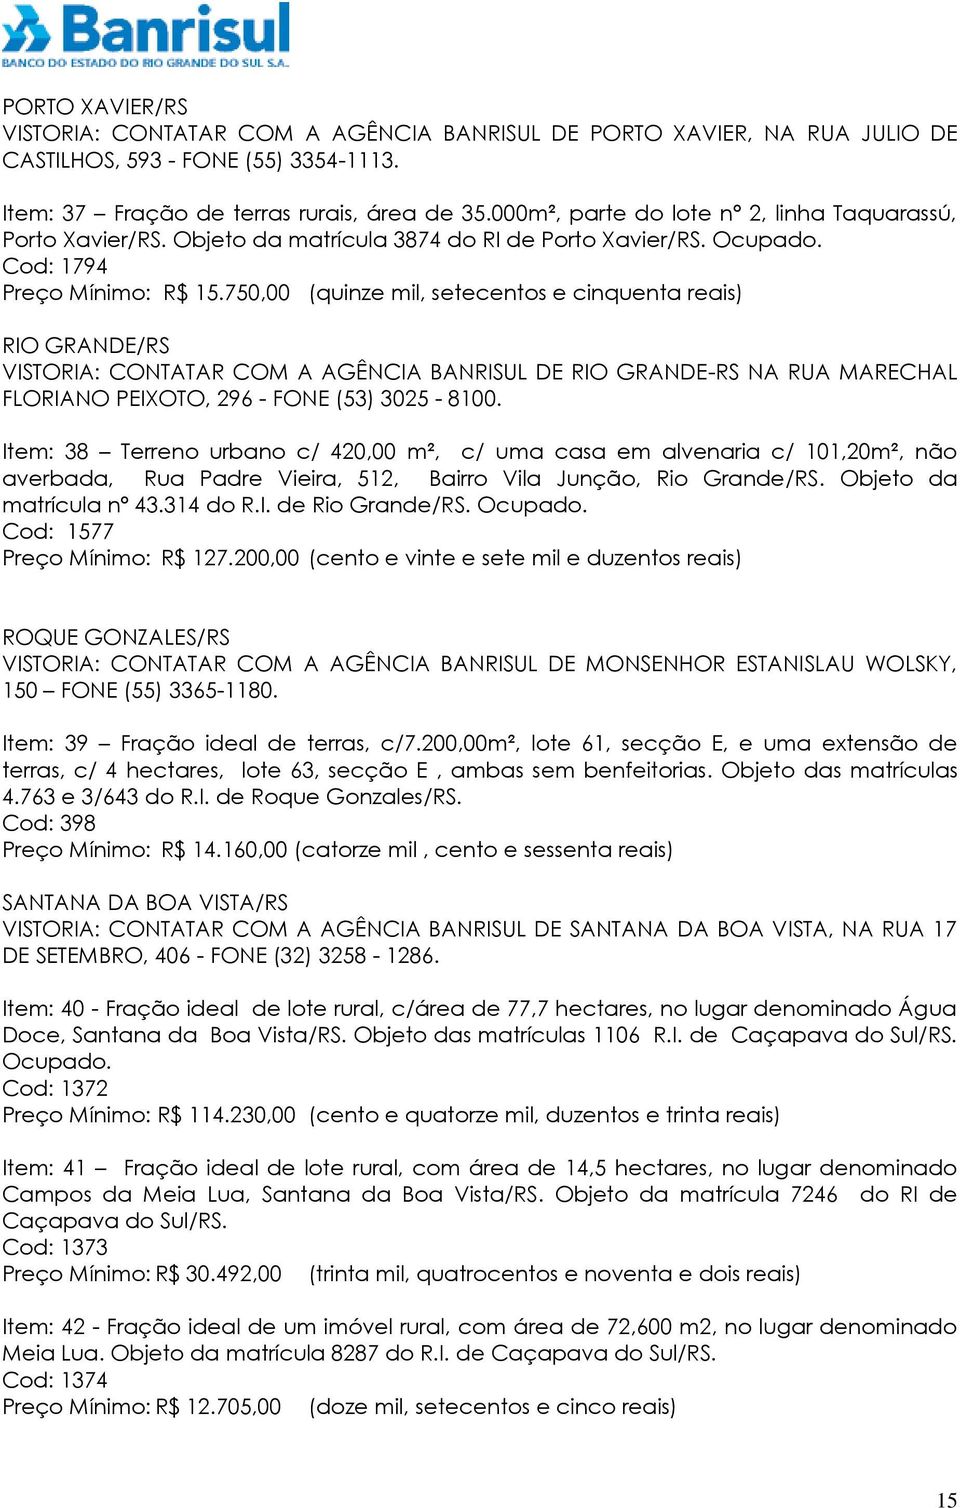 750,00 (quinze mil, setecentos e cinquenta reais) RIO GRANDE/RS VISTORIA: CONTATAR COM A AGÊNCIA BANRISUL DE RIO GRANDE-RS NA RUA MARECHAL FLORIANO PEIXOTO, 296 - FONE (53) 3025-8100.